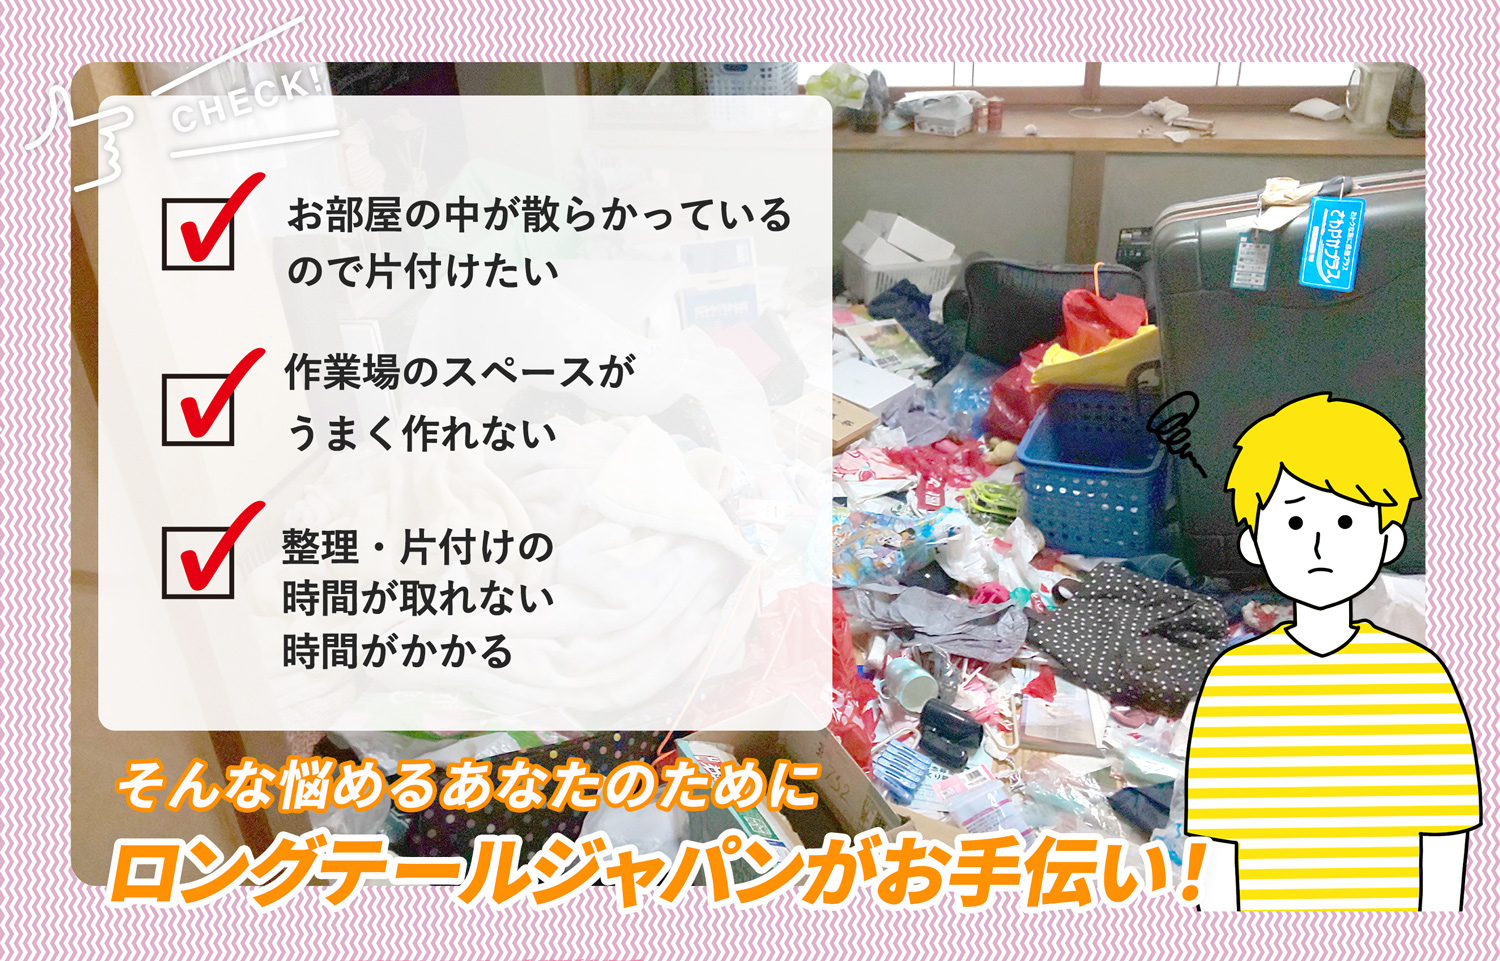 茨城県でお部屋の中から店舗、事務所、倉庫まで自分達で片付けられない場合はお部屋の片付け隊がやらせていただきます。